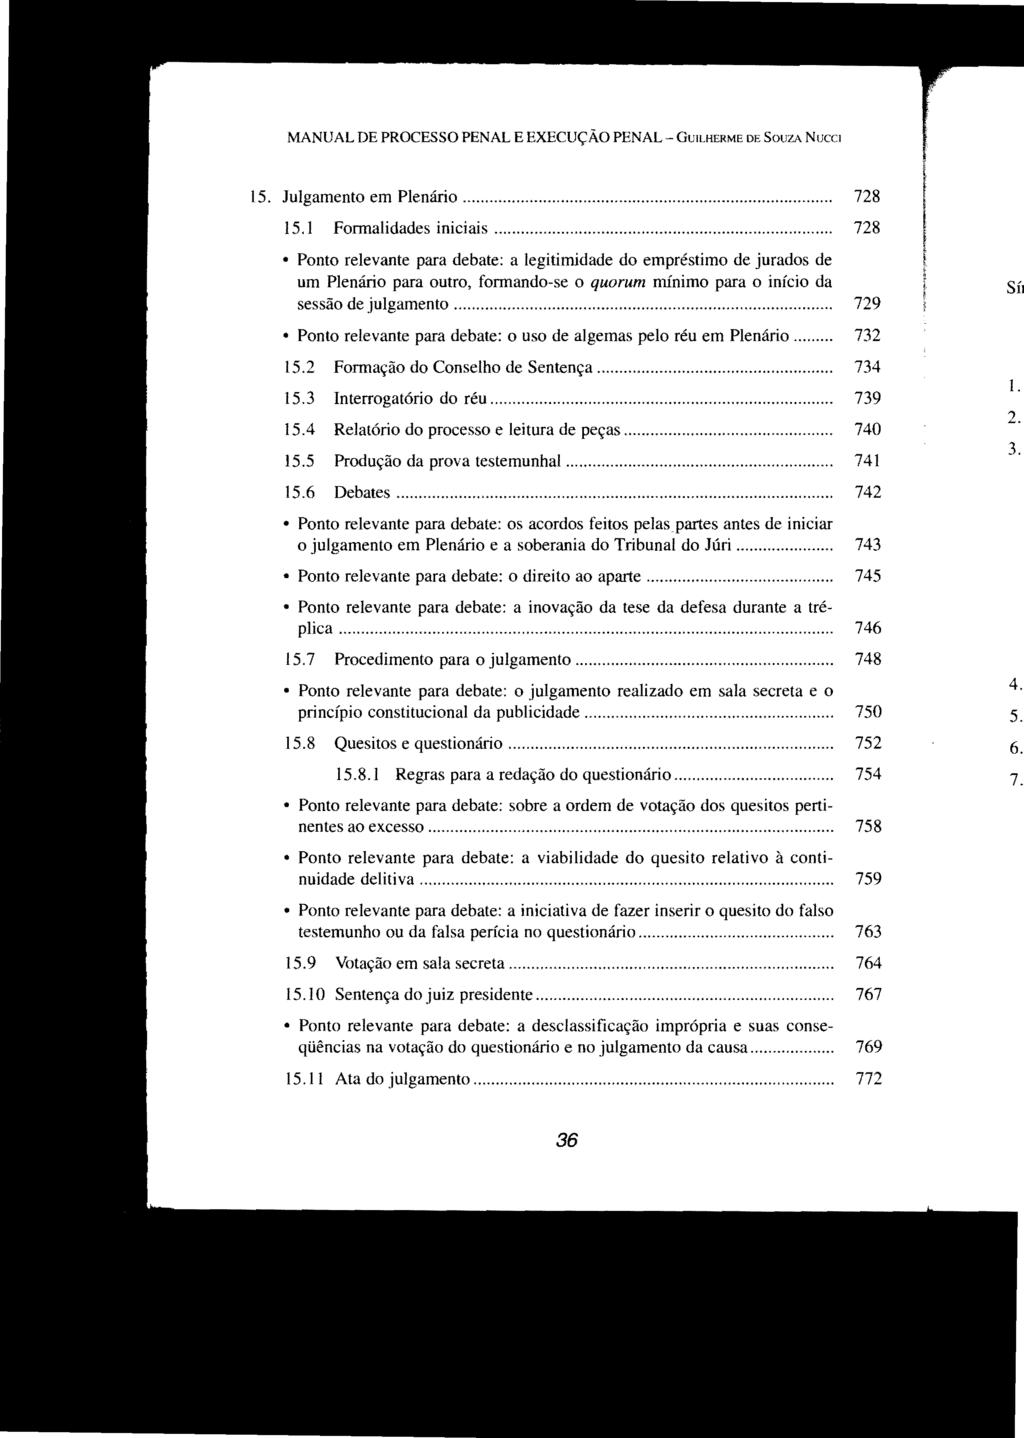 MANUAL DE PROCESSO PENAL E EXECUÇÃO PENAL - GUILHERME DE SOUZA NUCCI 15. Julgamento em Plenário.... 728 15.1 Formalidades iniciais.